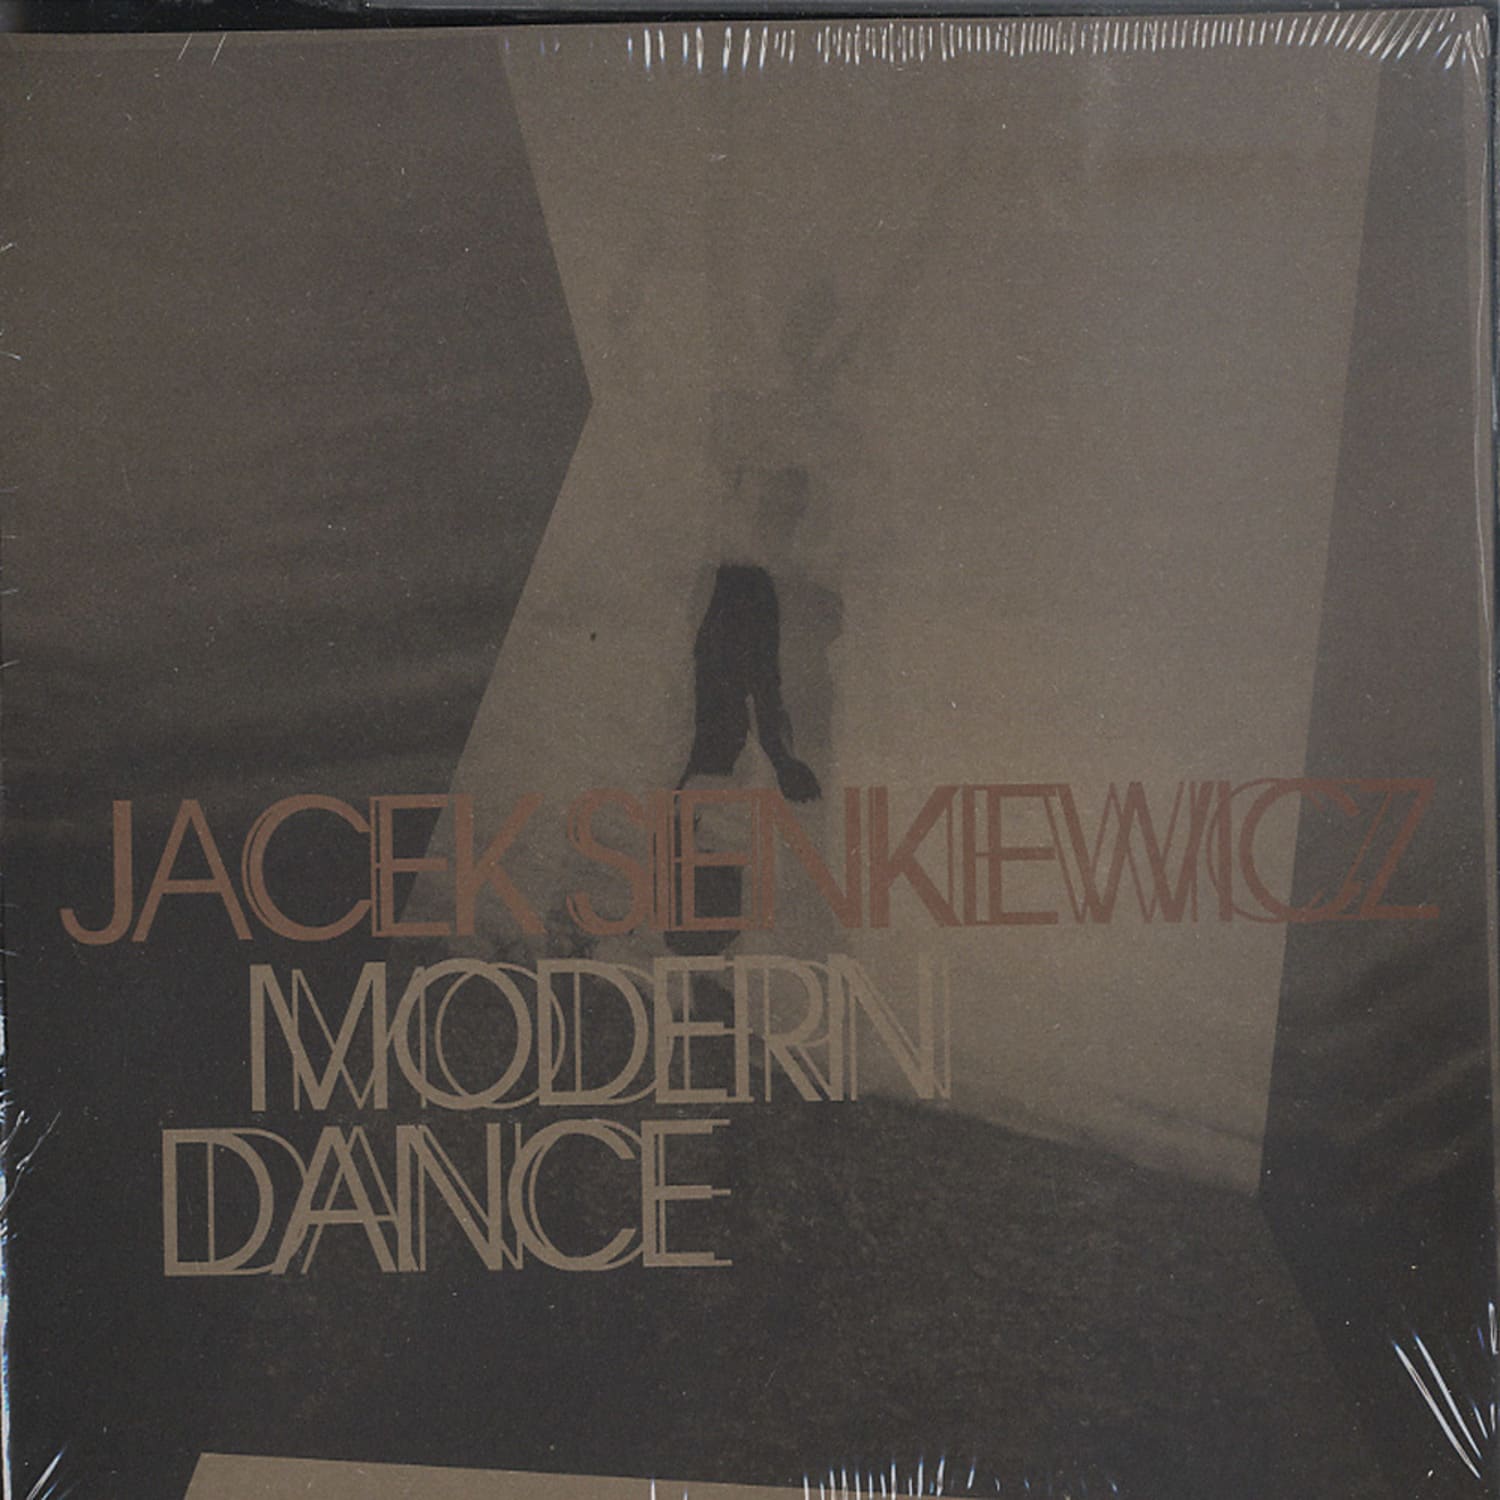 Jacek Sienkiewicz - MODERN DANCE 